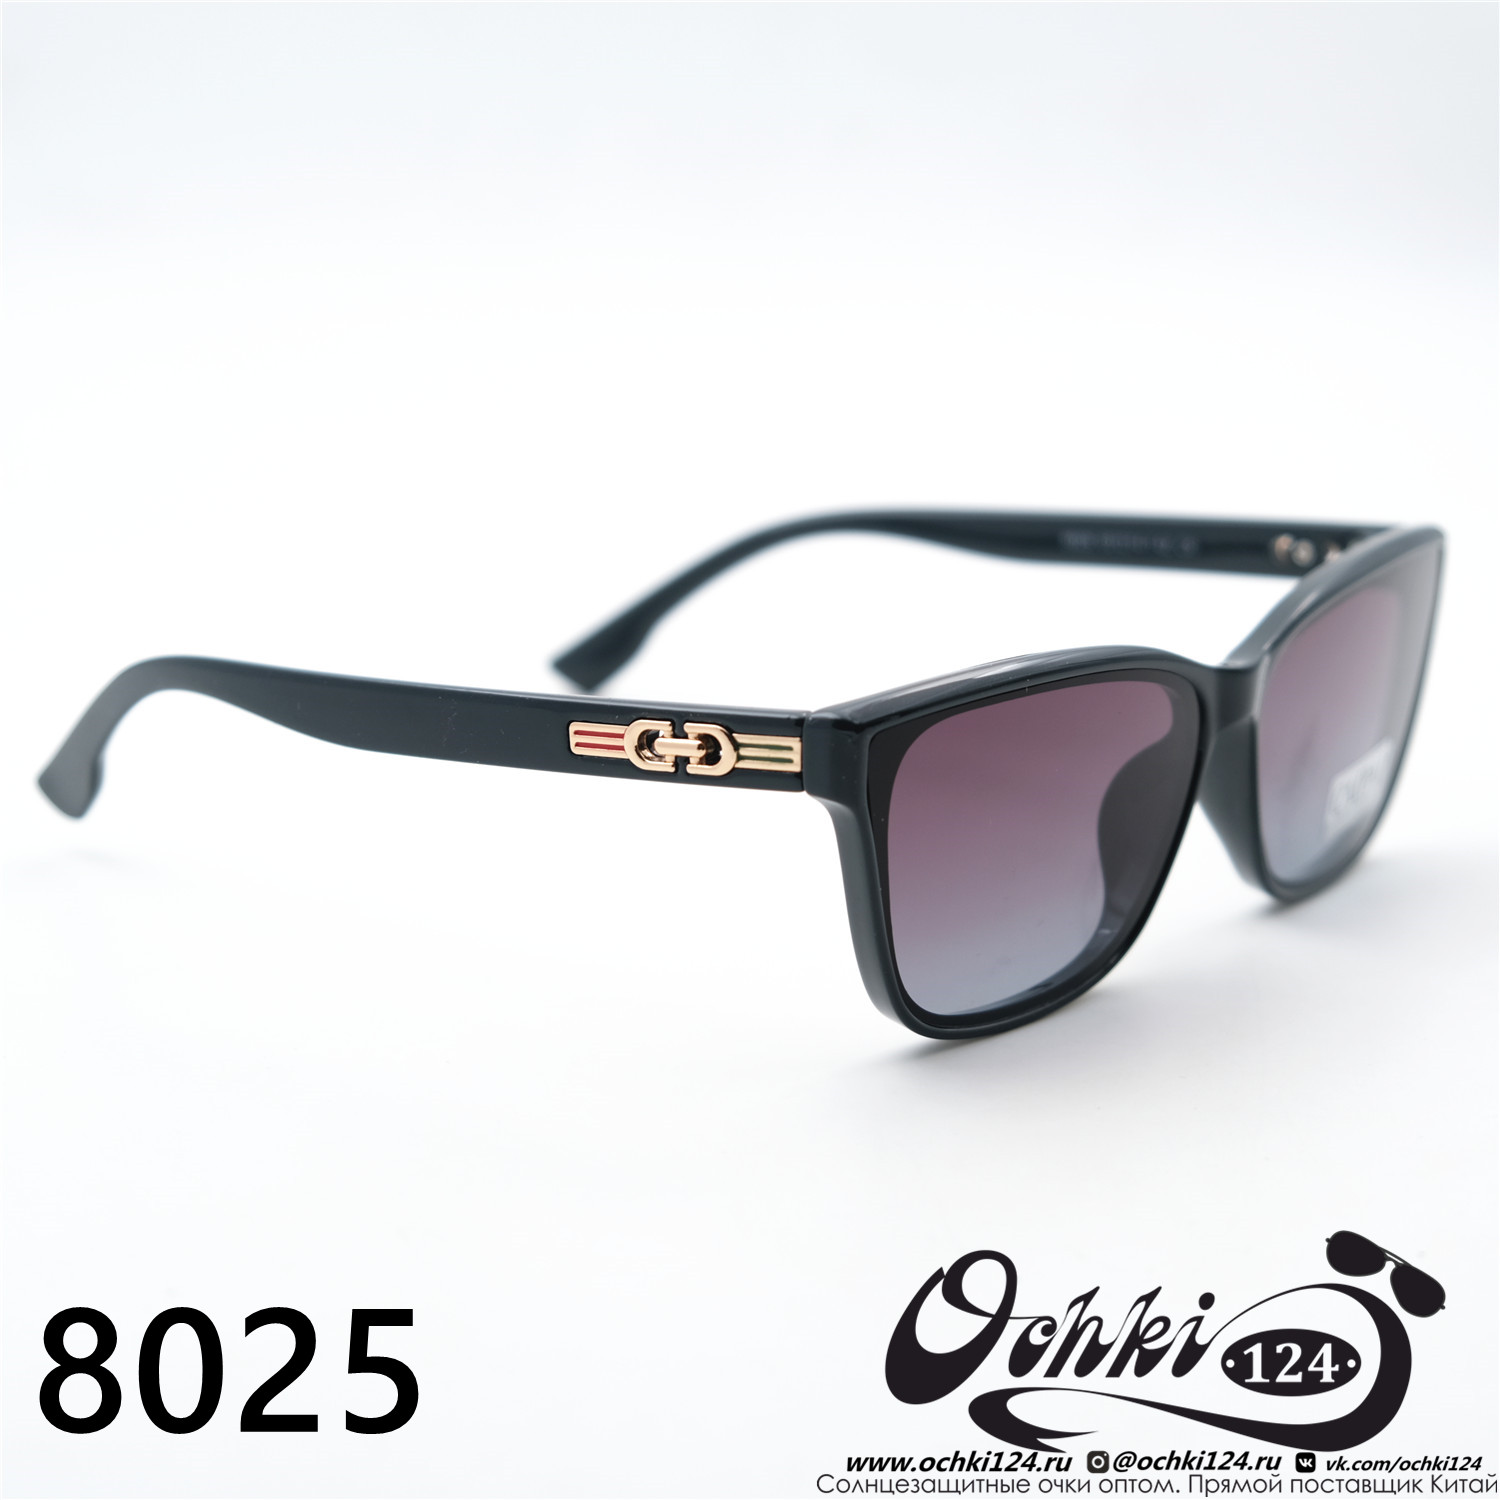  Солнцезащитные очки картинка 2023 Женские Лисички Caipai 8025-C5 